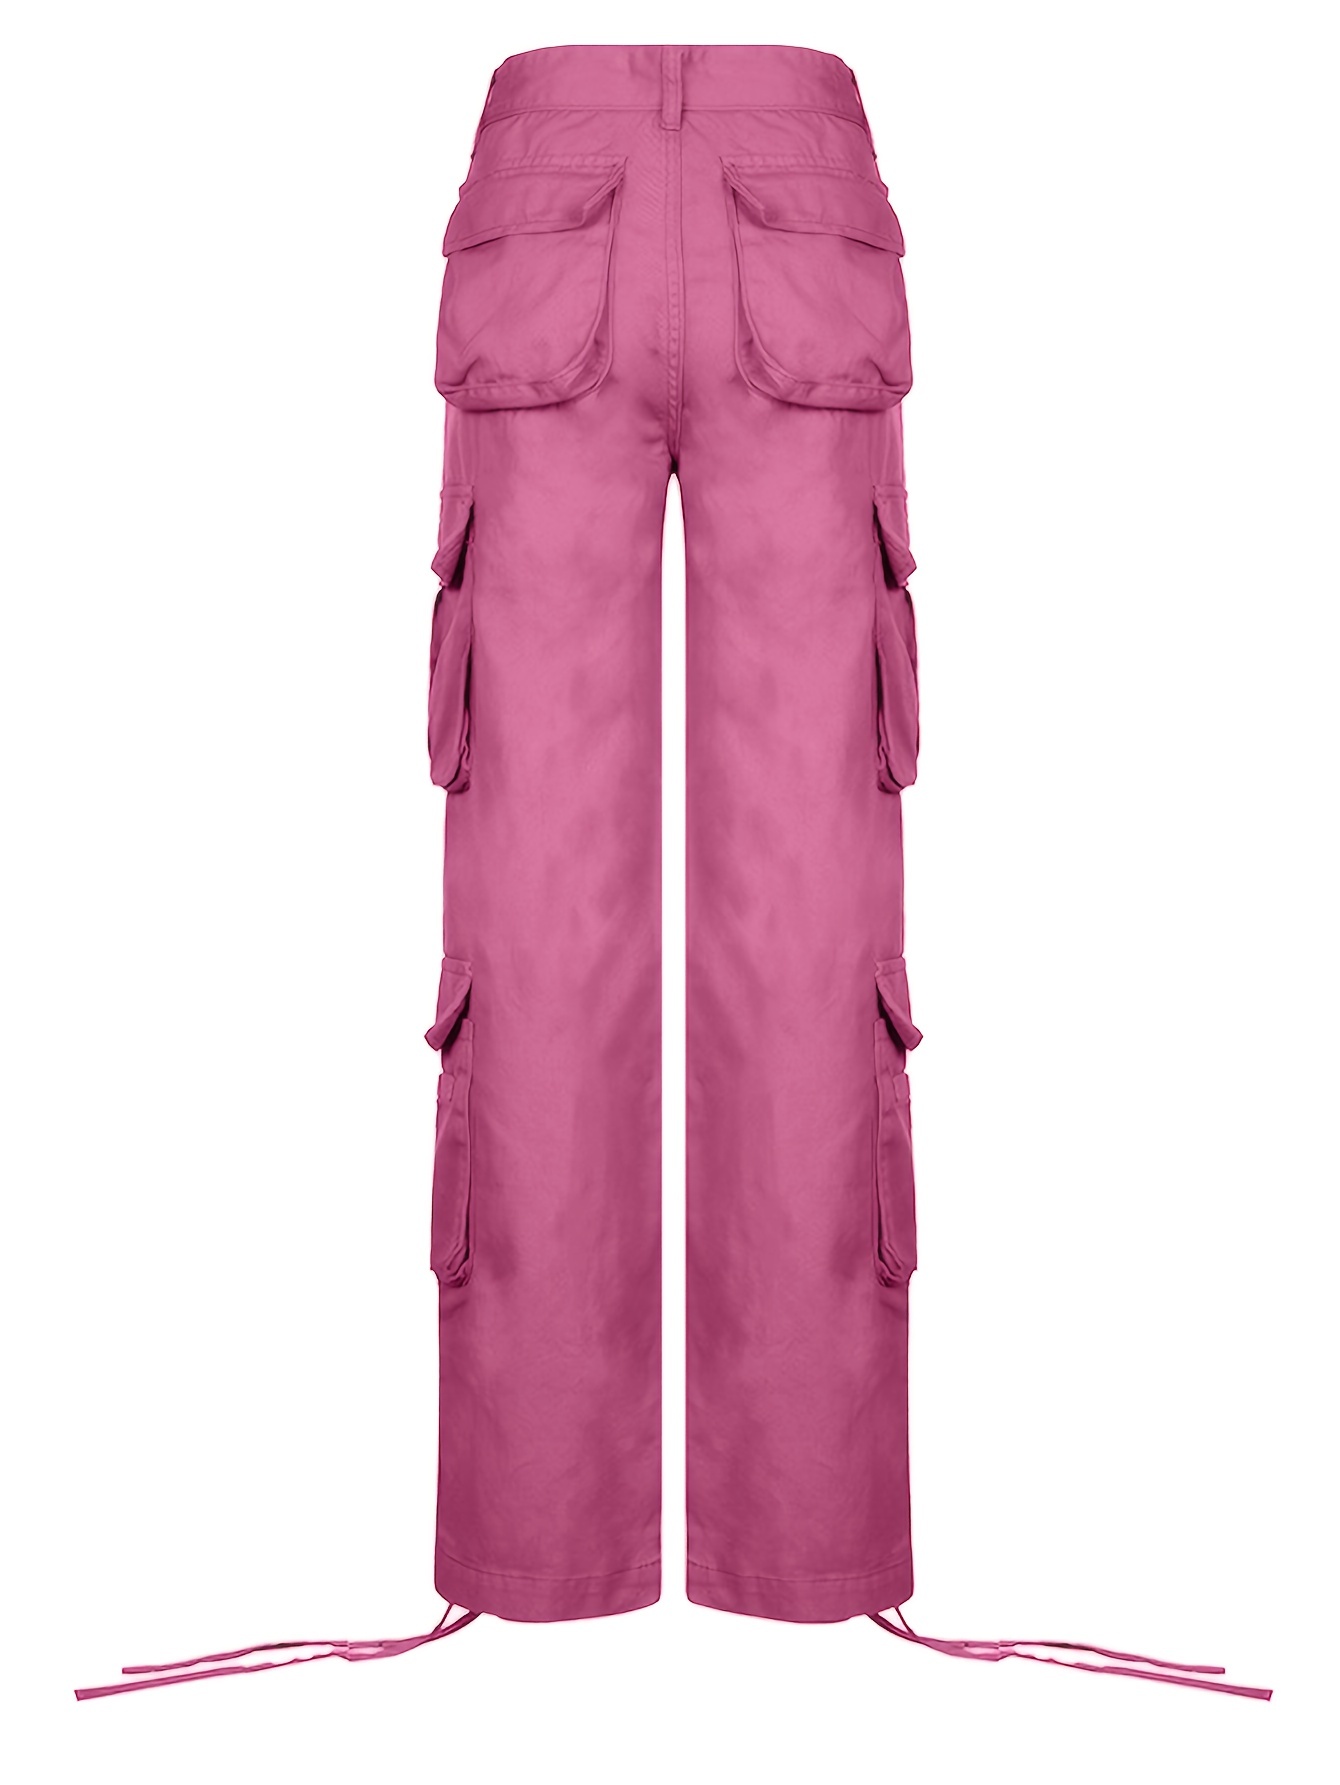 Hot Pink Woven Pocket Detail High Waist Cargo Pants